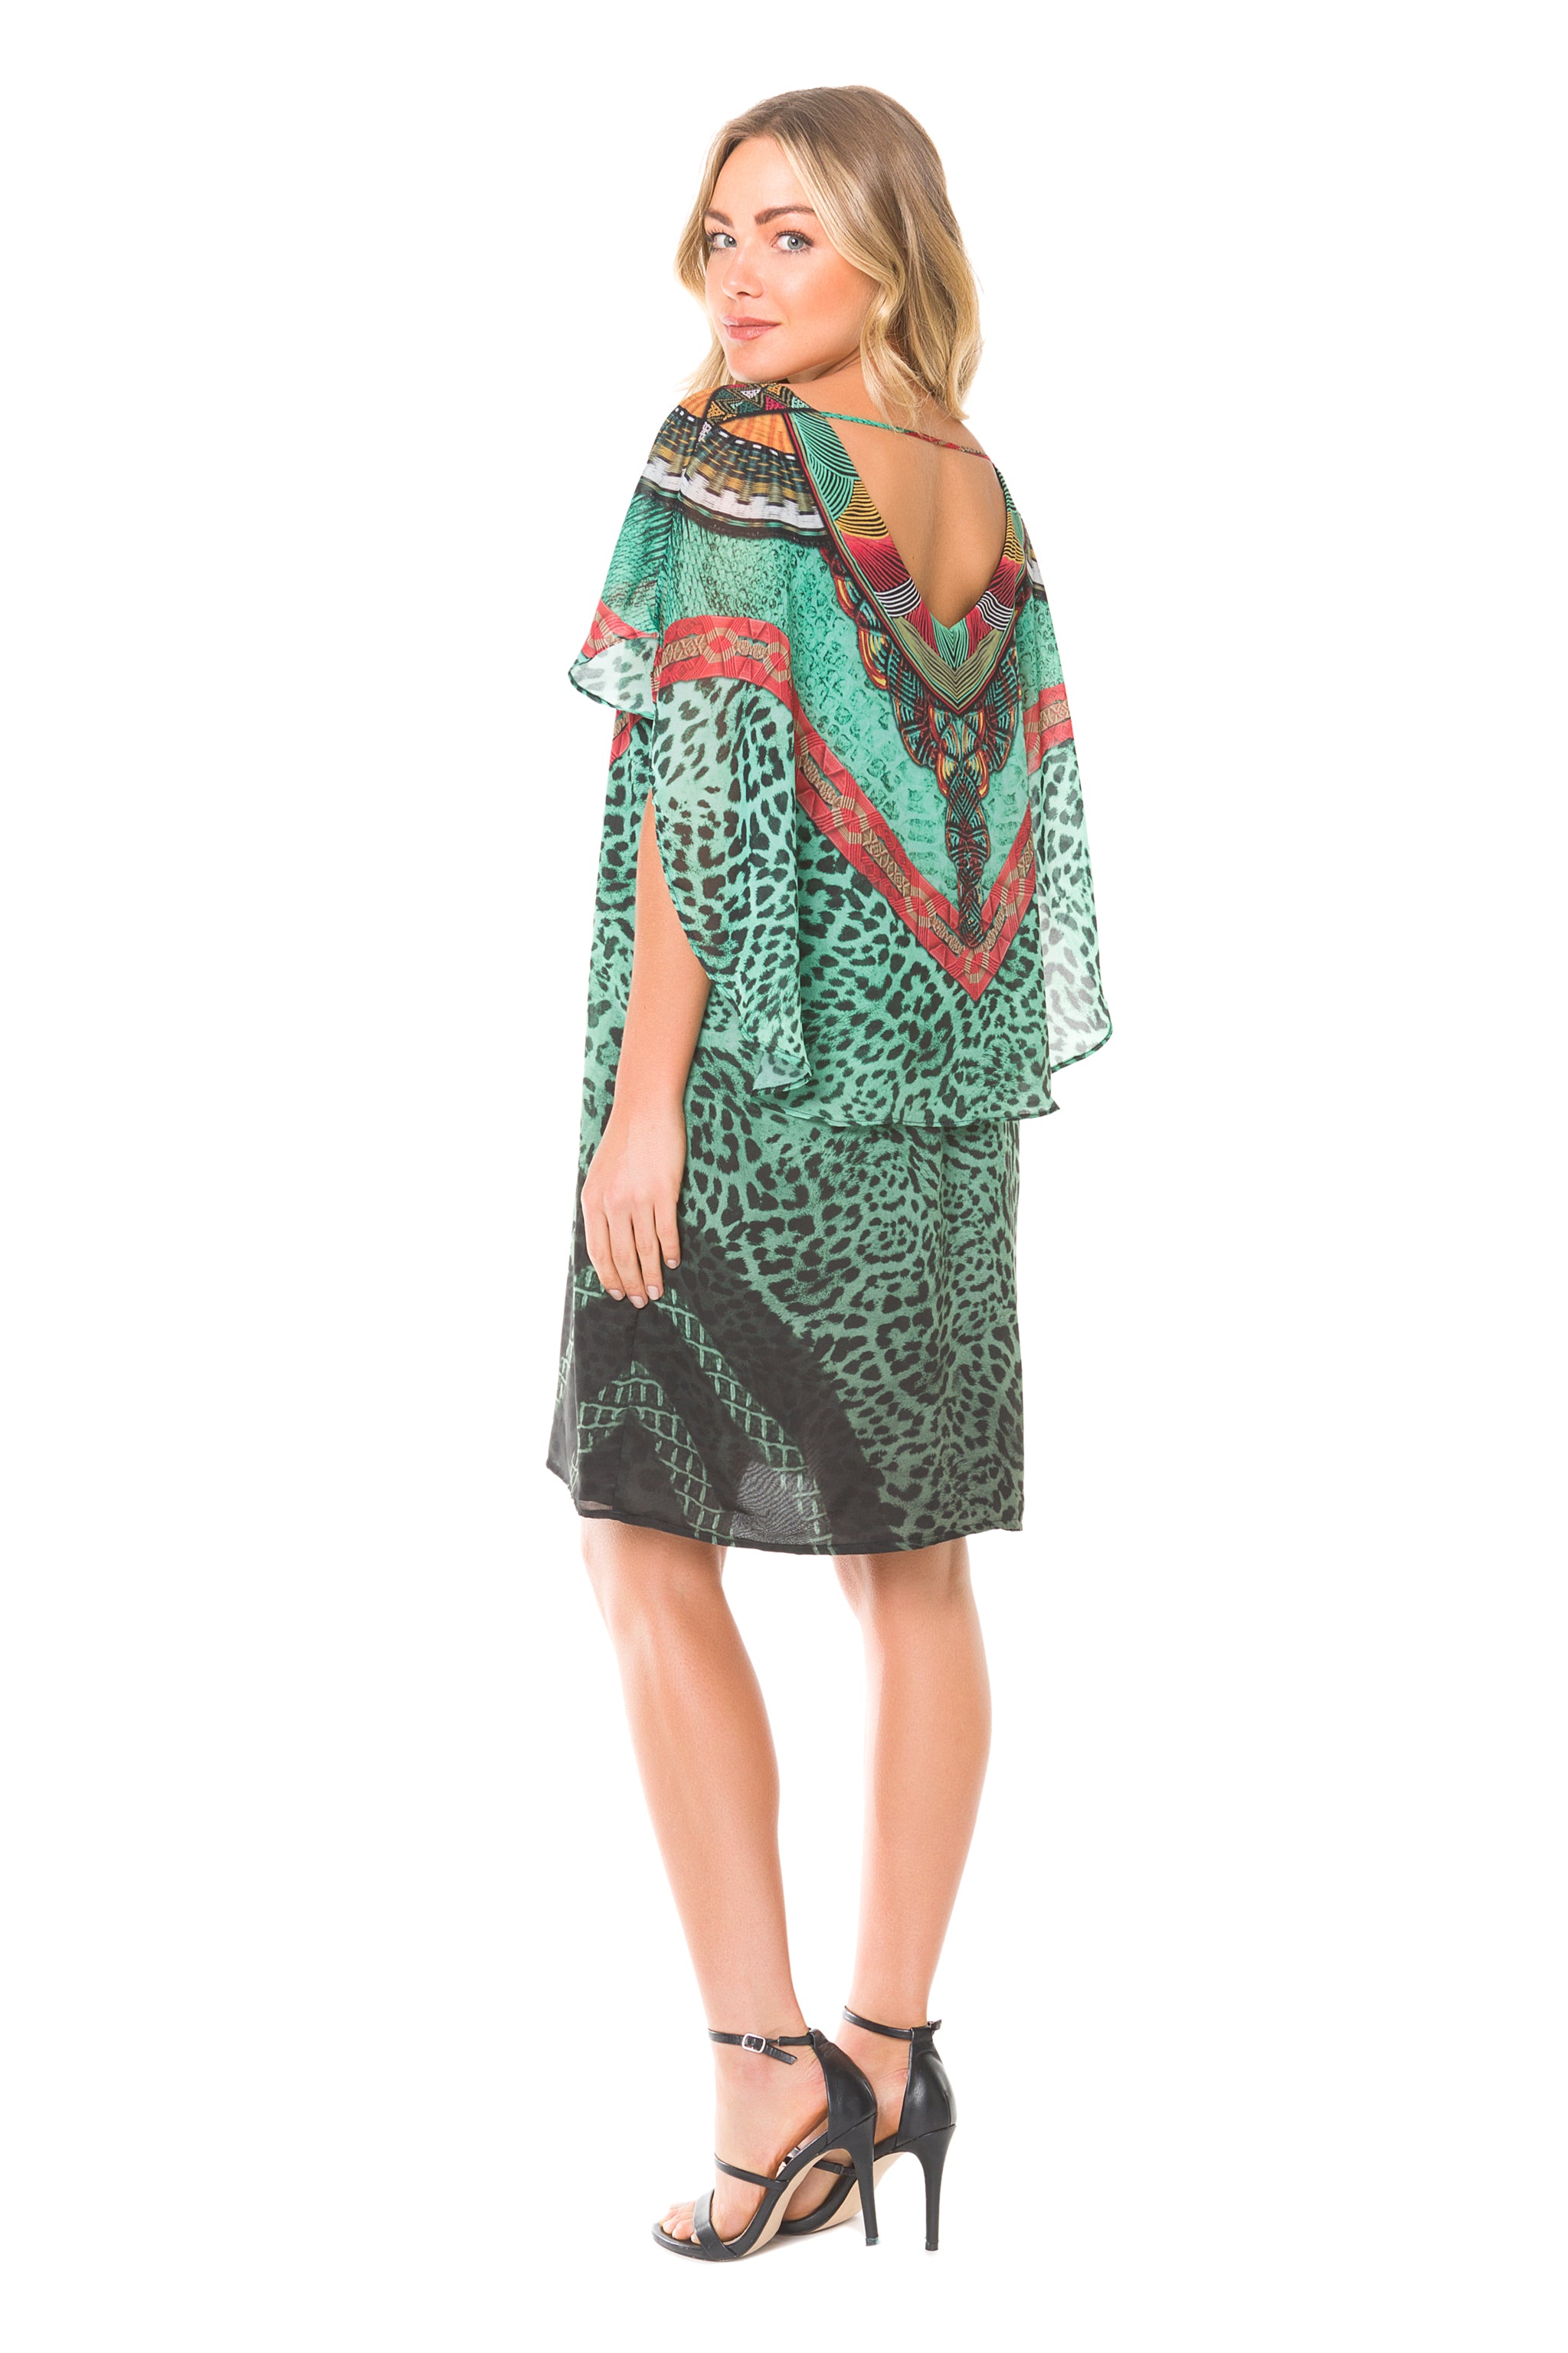 Africa Bonnie Dress - Lybethras Swimwear